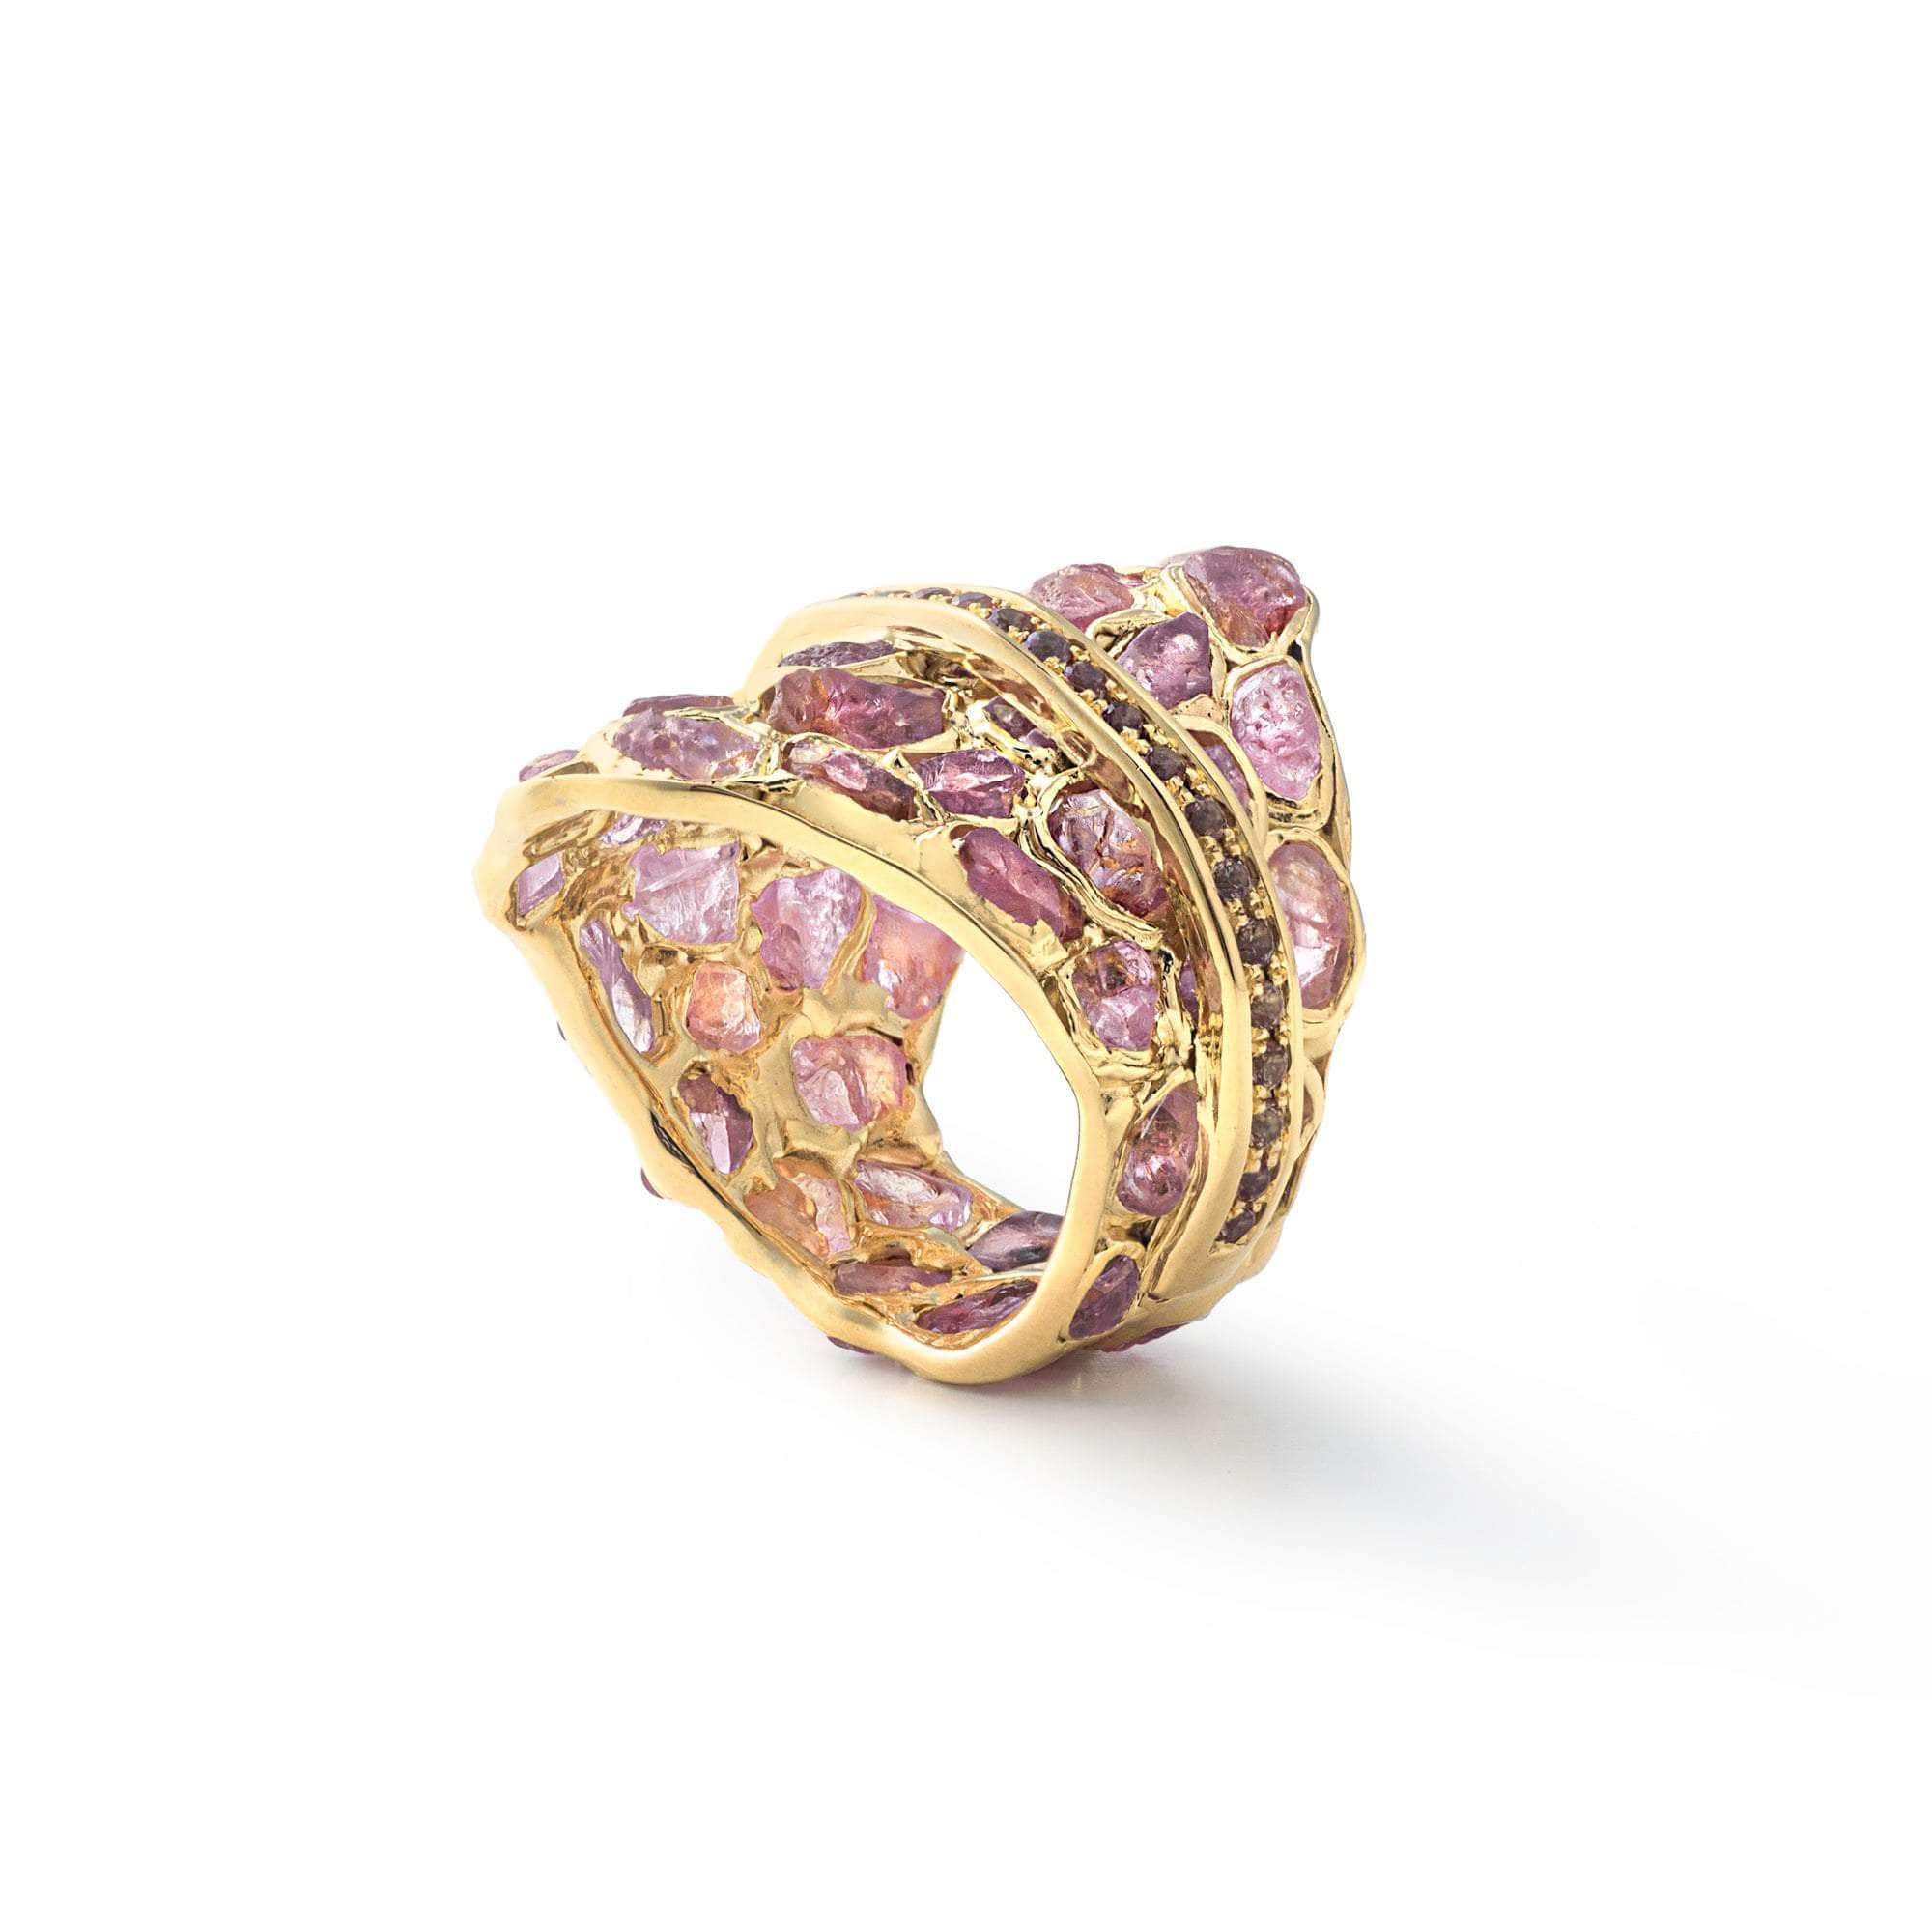 Lush Rough Pink Spinel and Pink Sapphire Ring GERMAN KABIRSKI